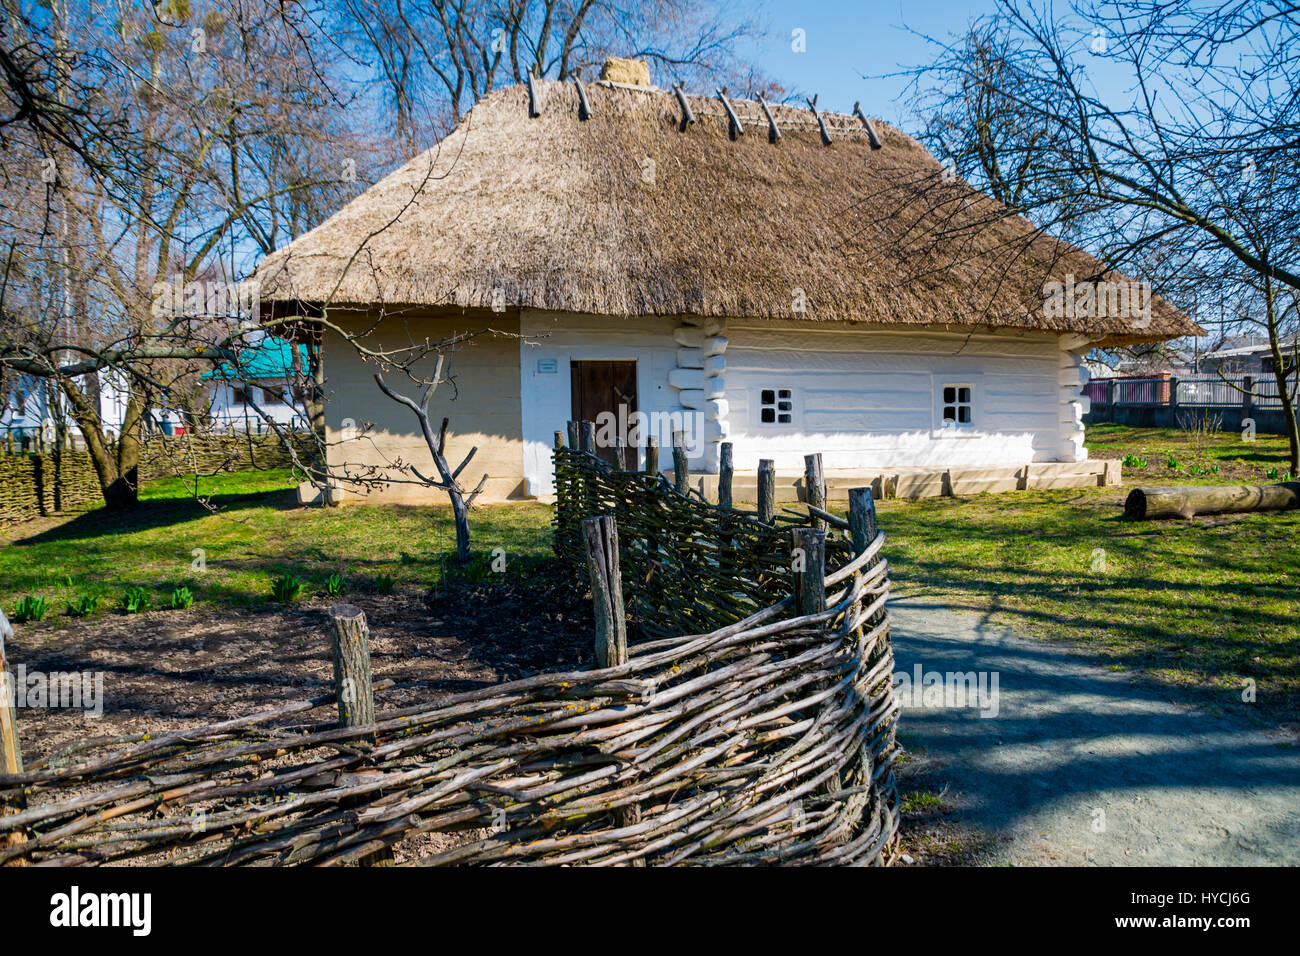 Ukrainien authentique maison de village. Banque D'Images